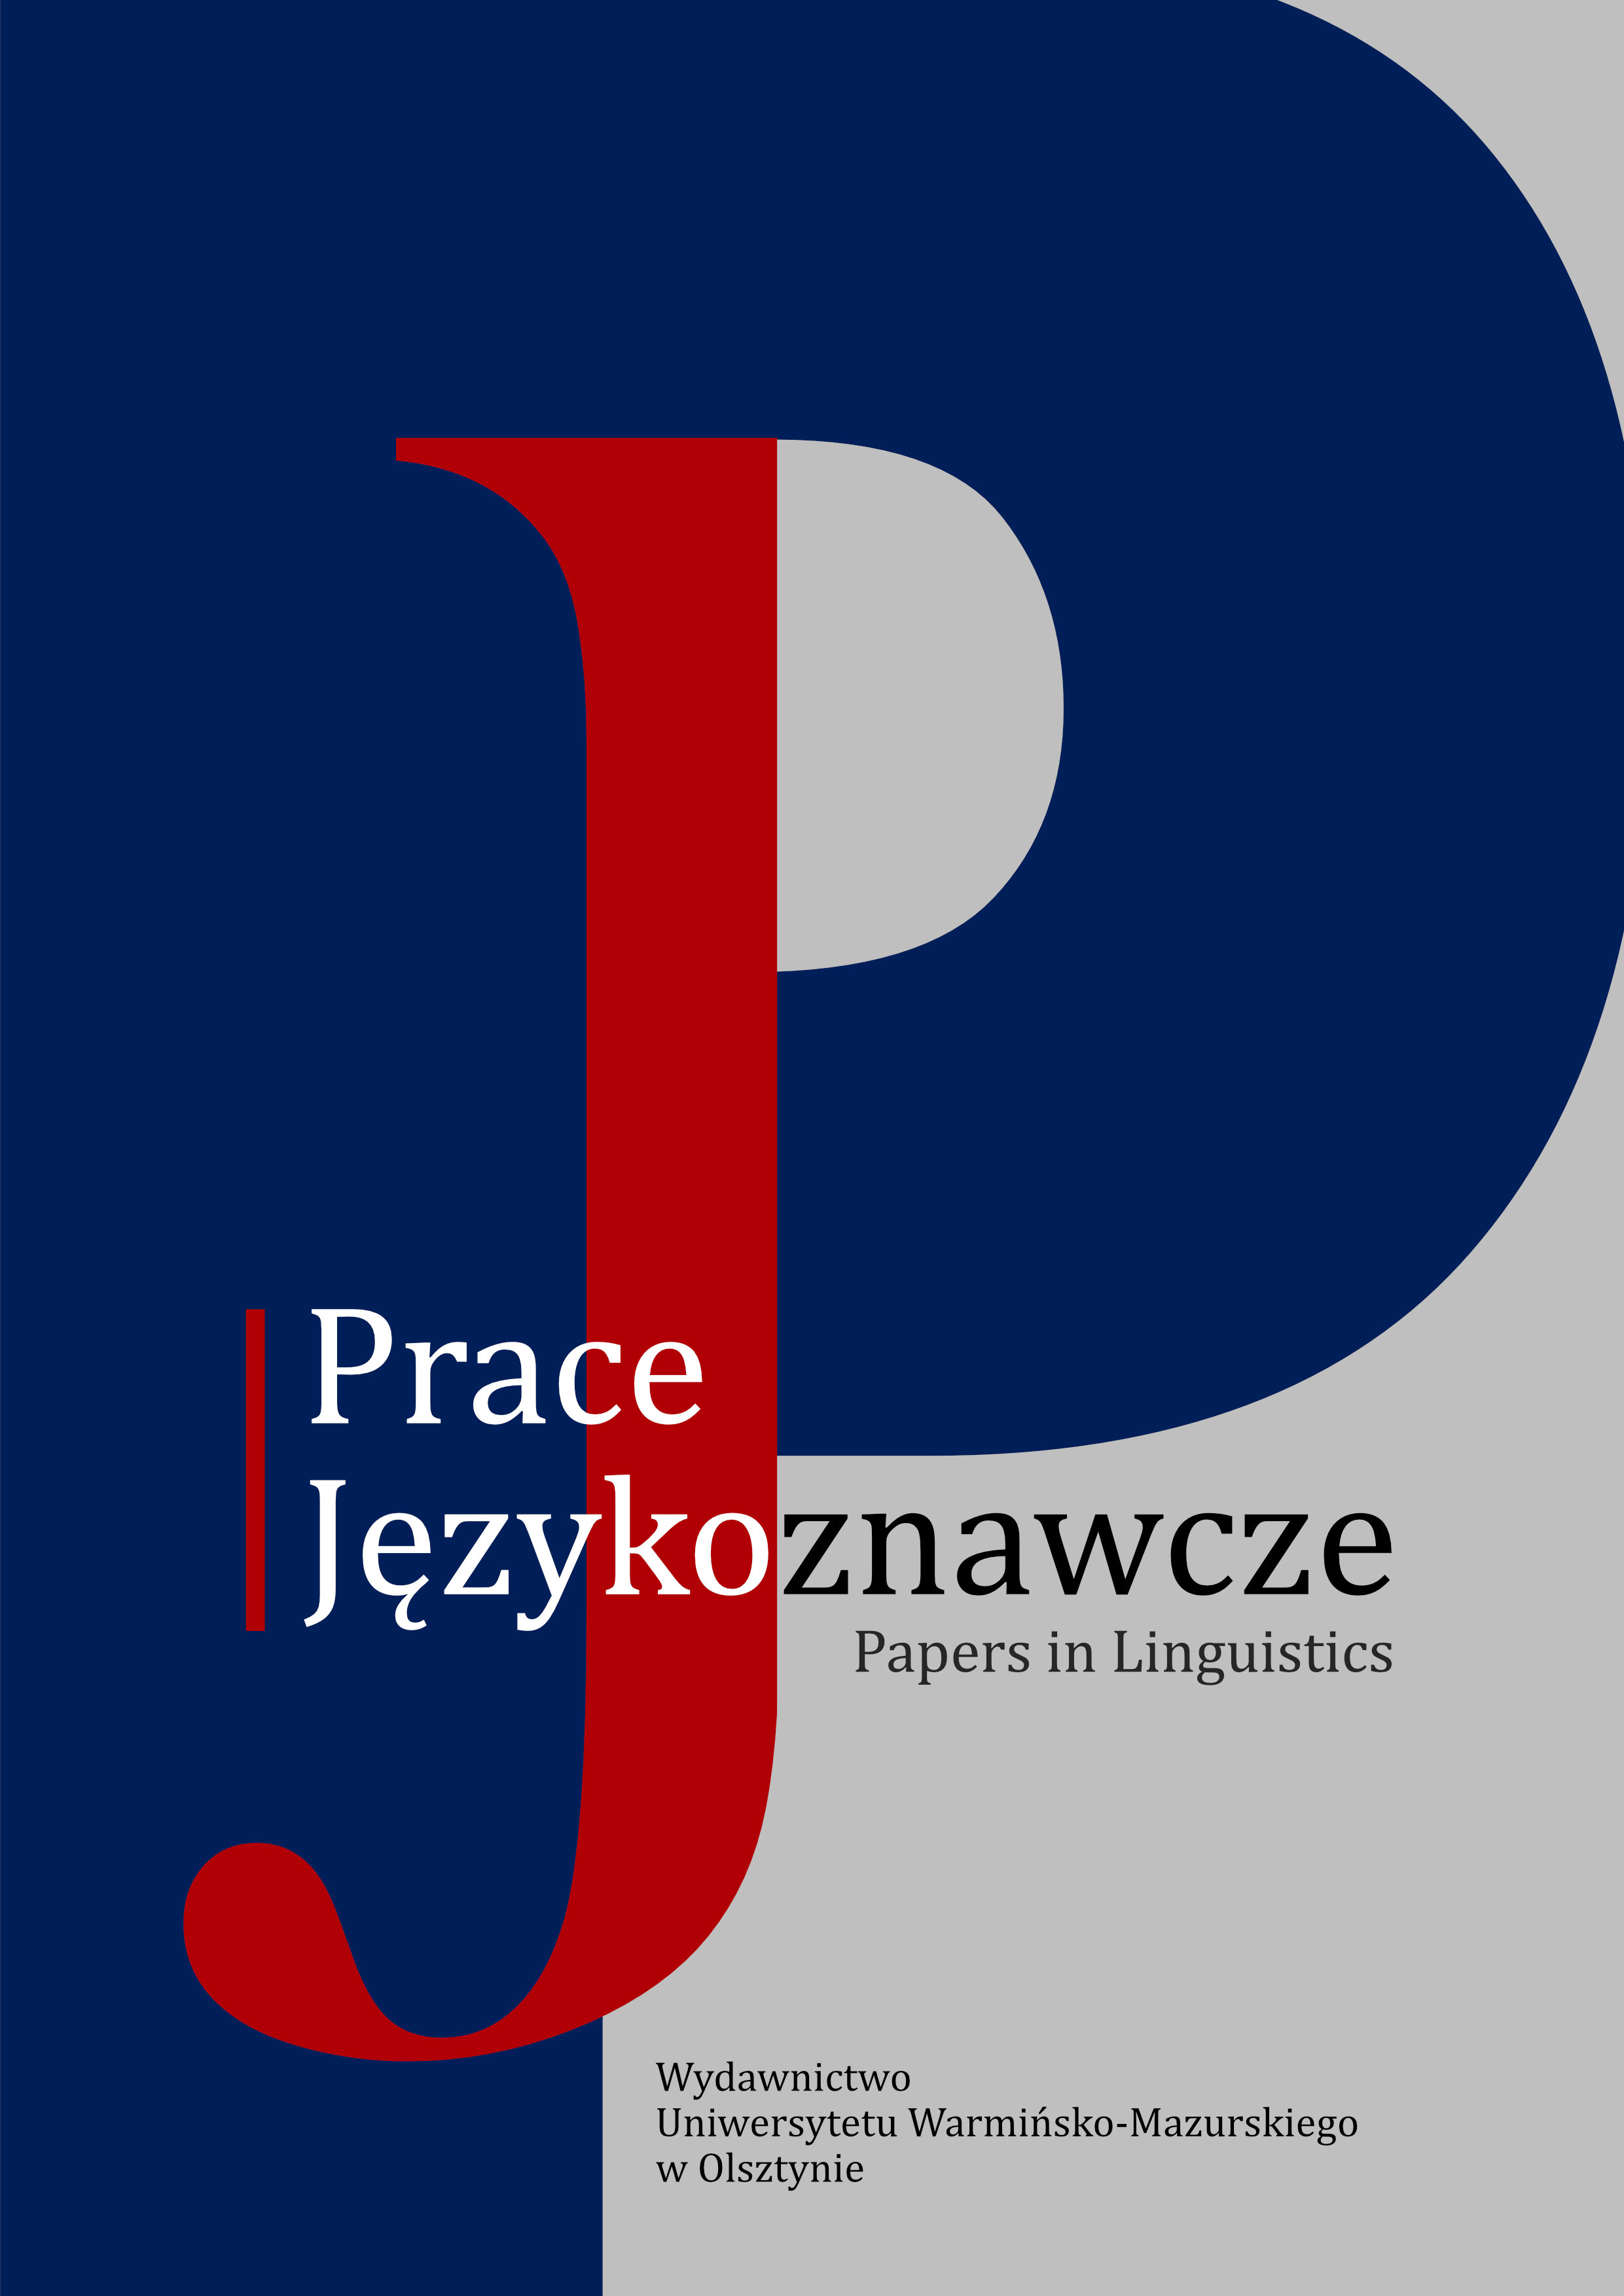 Trawestacje biblijne jako element propagandy
antyreligijnej na przykładzie tekstów prasowych
w języku polskim, rosyjskim i ukraińskim
z lat 1924–1932